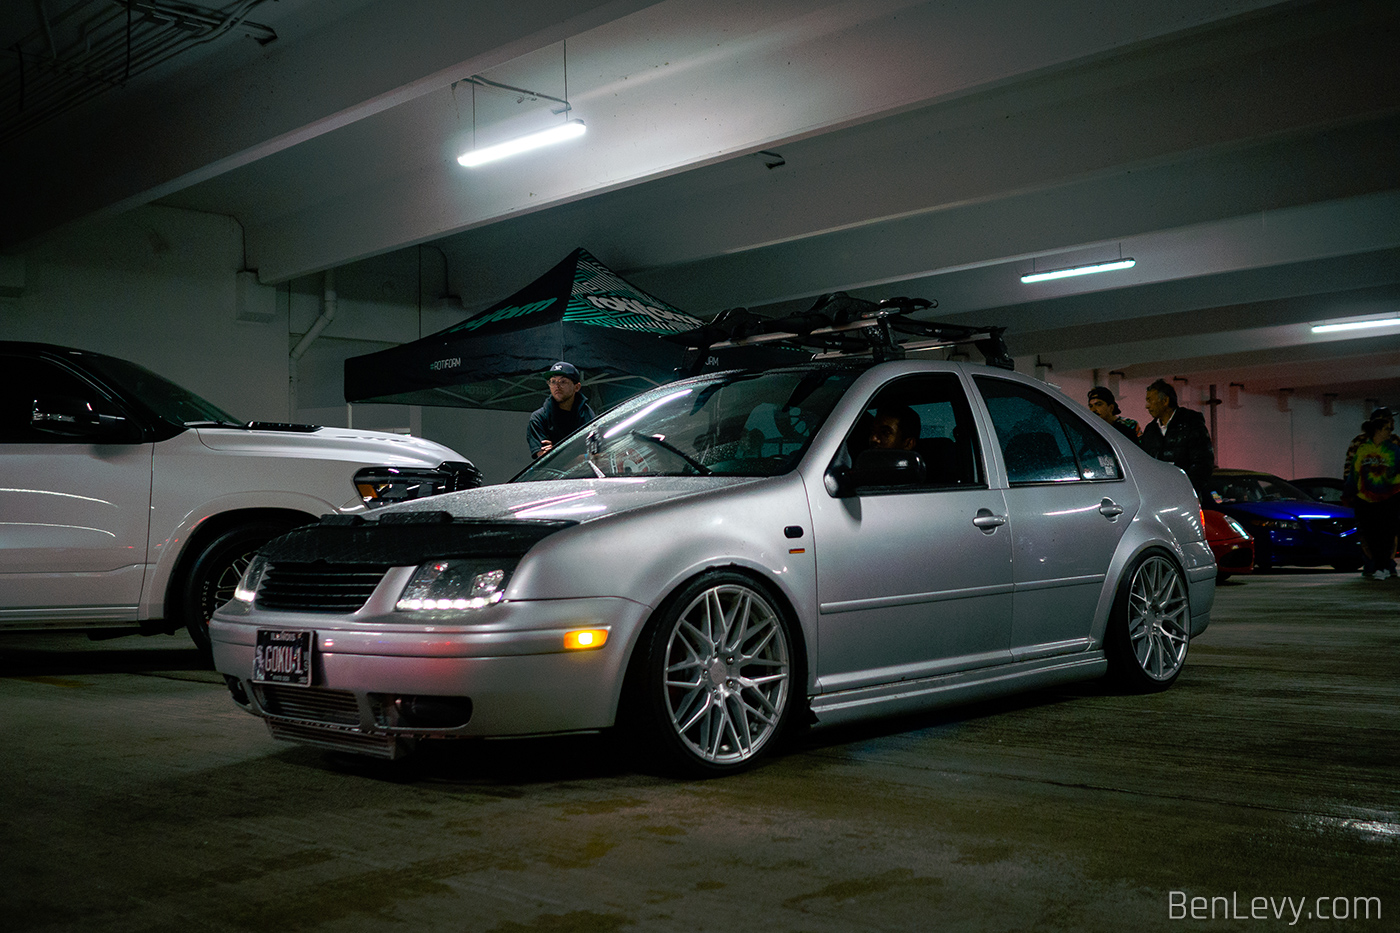 Silver Jetta in Parking Garage